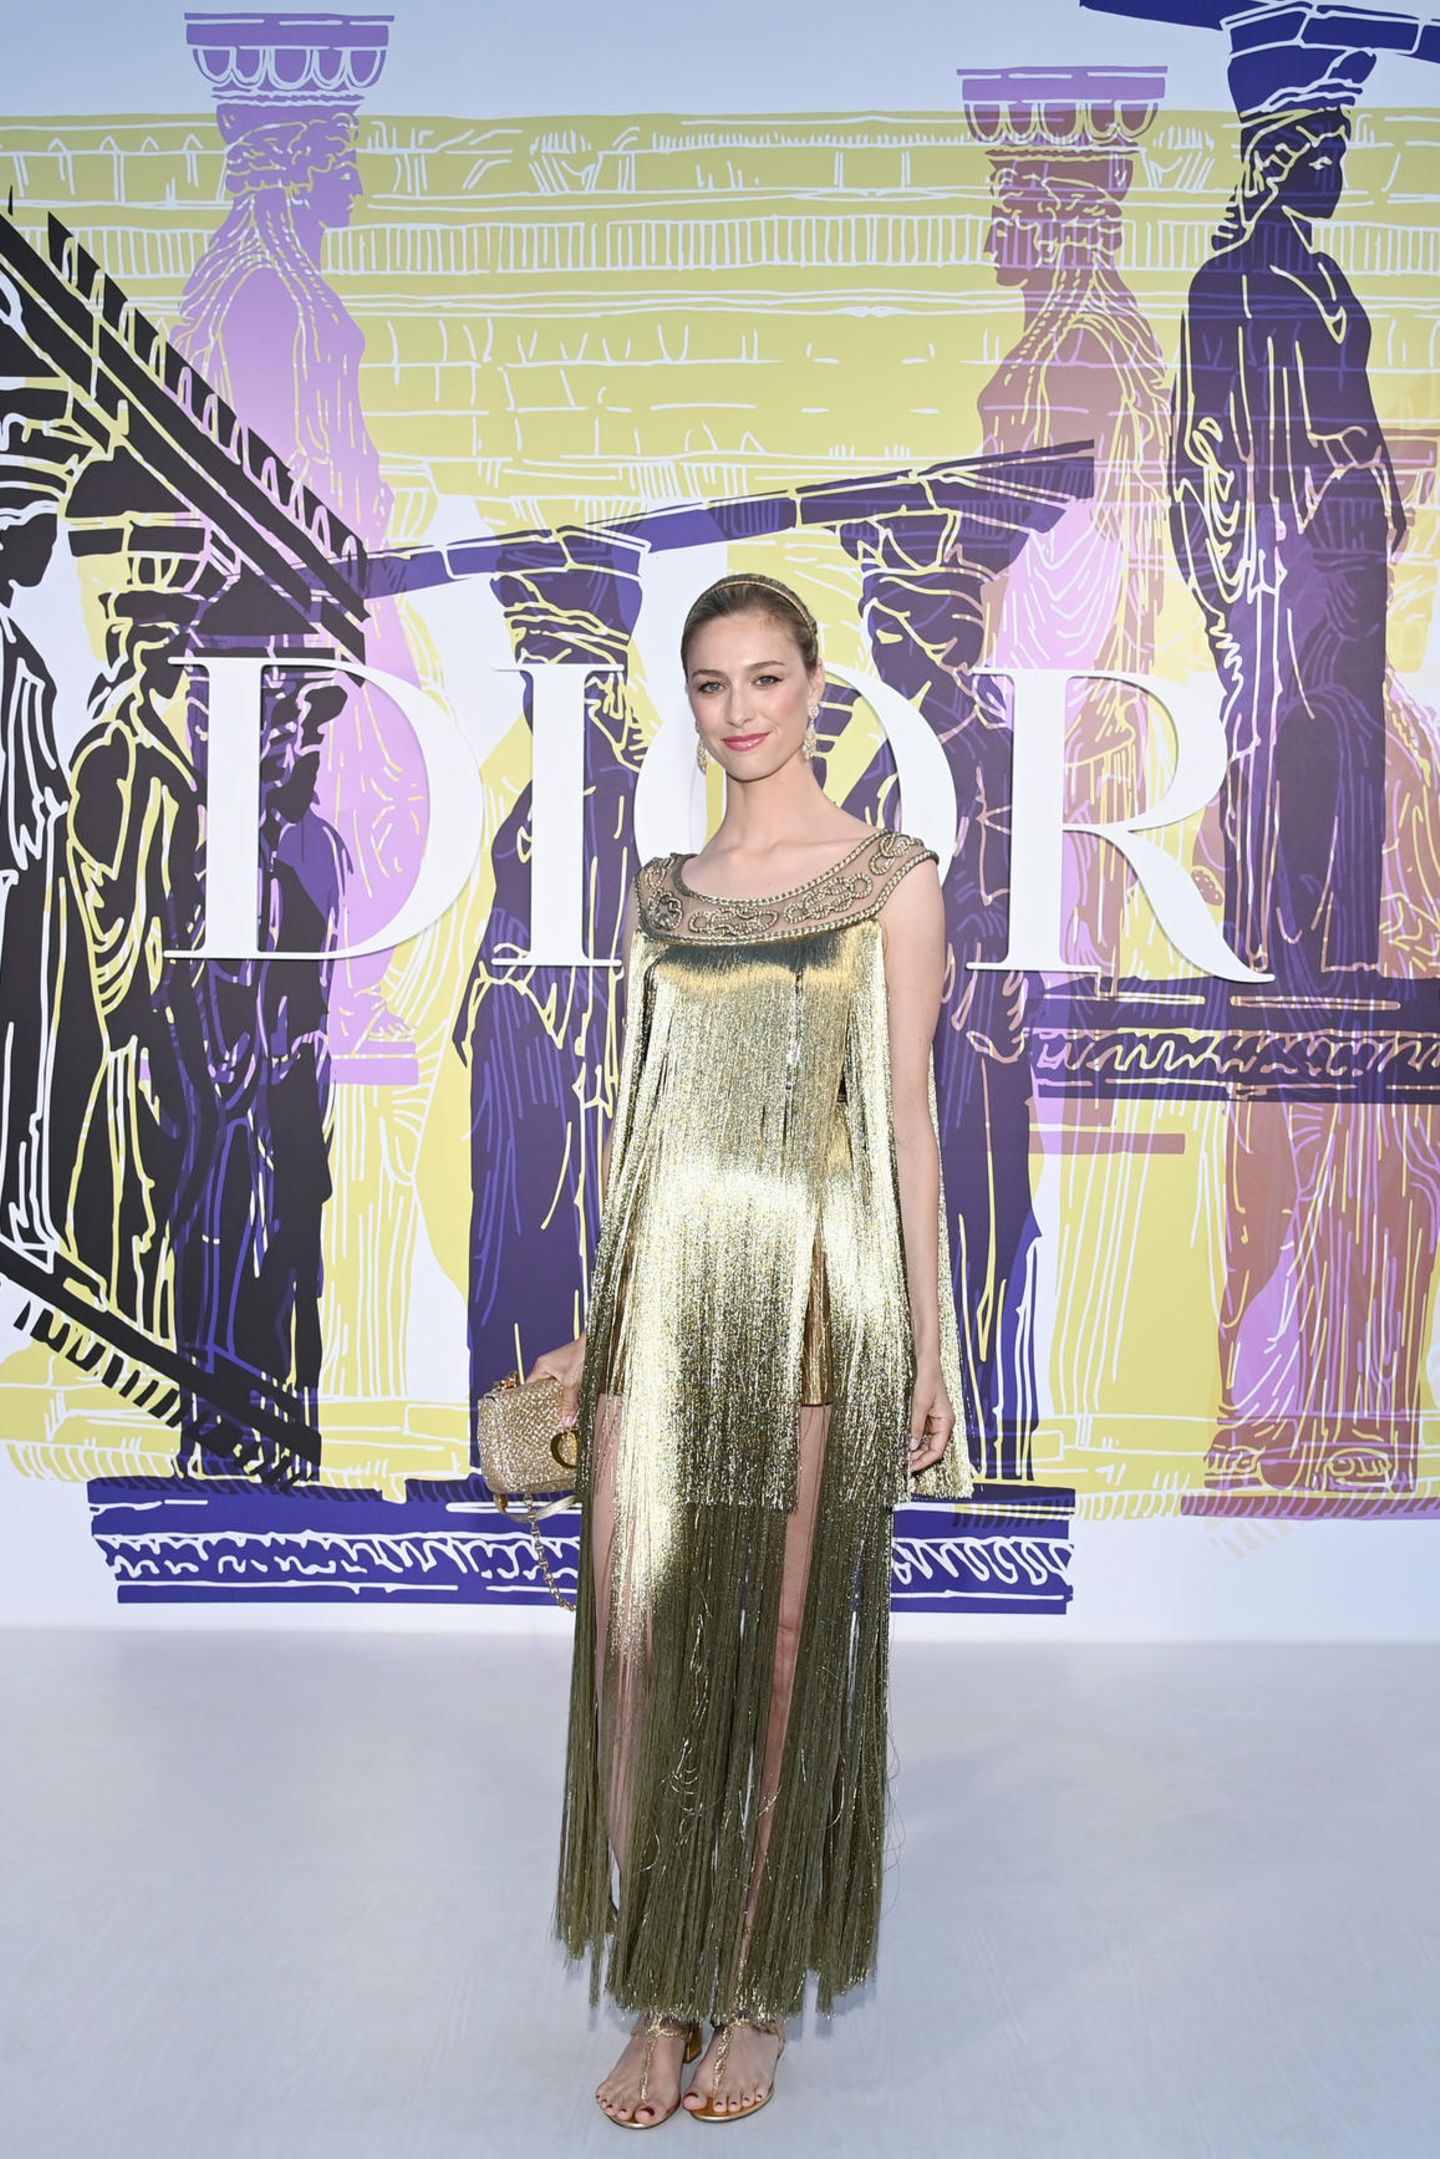 Von der Prinzessin zur Göttin: Beatrice Borromeo trägt ein goldenes Fransenkleid, Sandalen und eine elegante Hochsteckfrisur. Stilsicher und selbstbewusst posiert sie vor der Show für die Fotografen. 